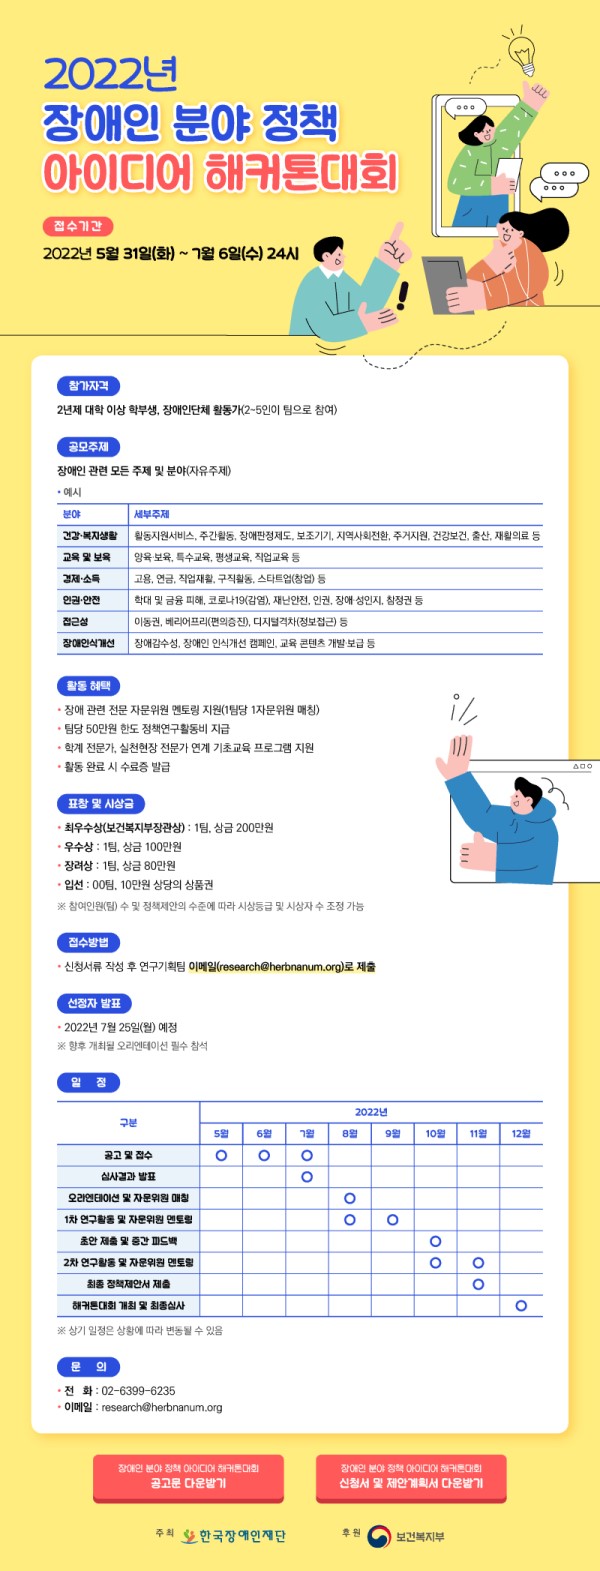 한국장애인재단, 2022년 장애인 분야 정책 아이디어 해커톤대회 개최 의 관련 사진